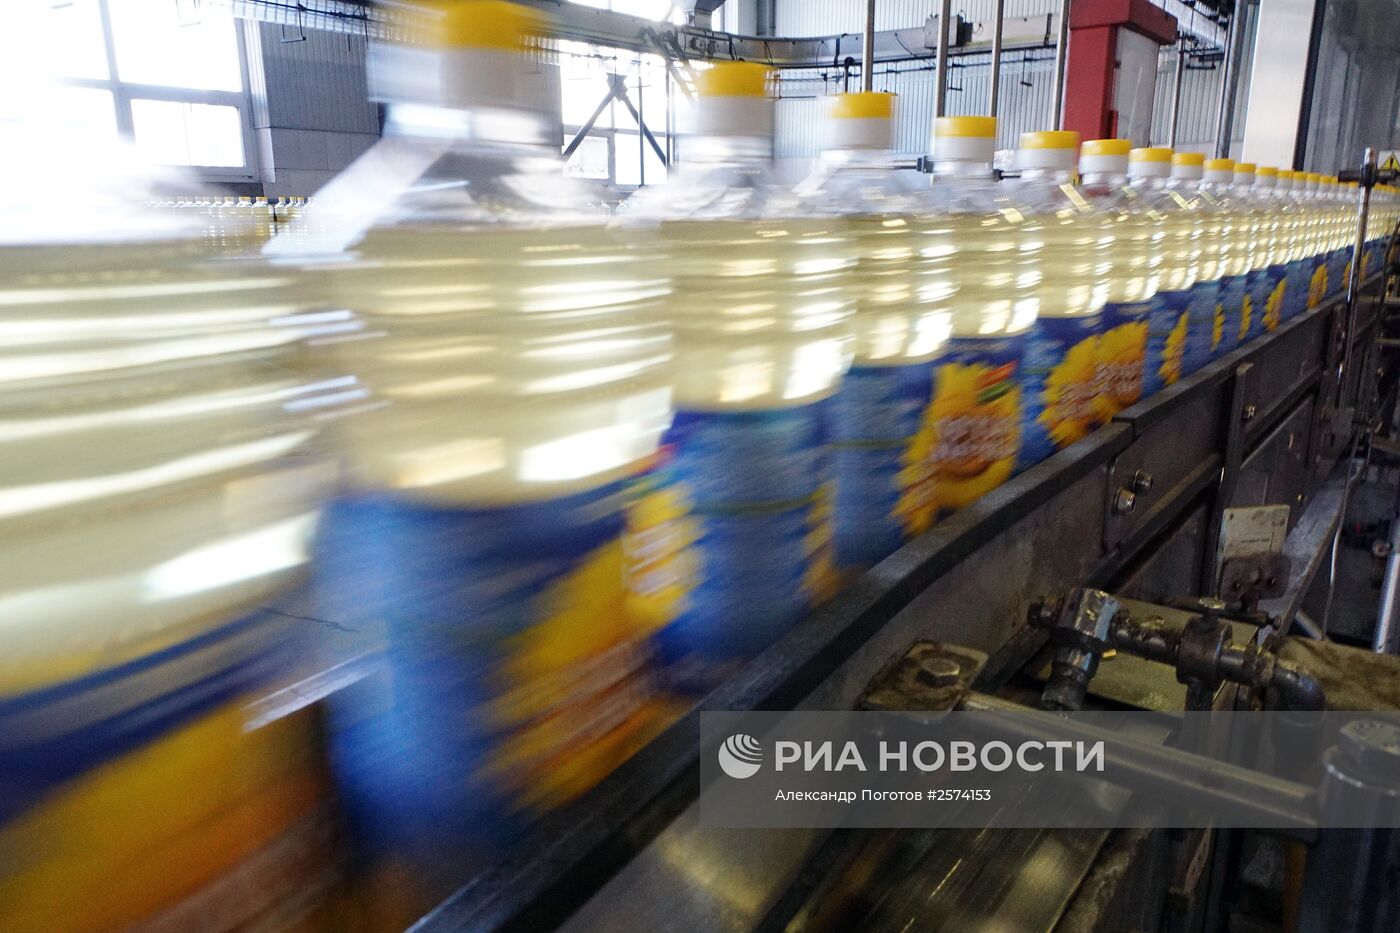 Производство подсолнечного масла "Золотая семечка" в Ростове-на-Дону